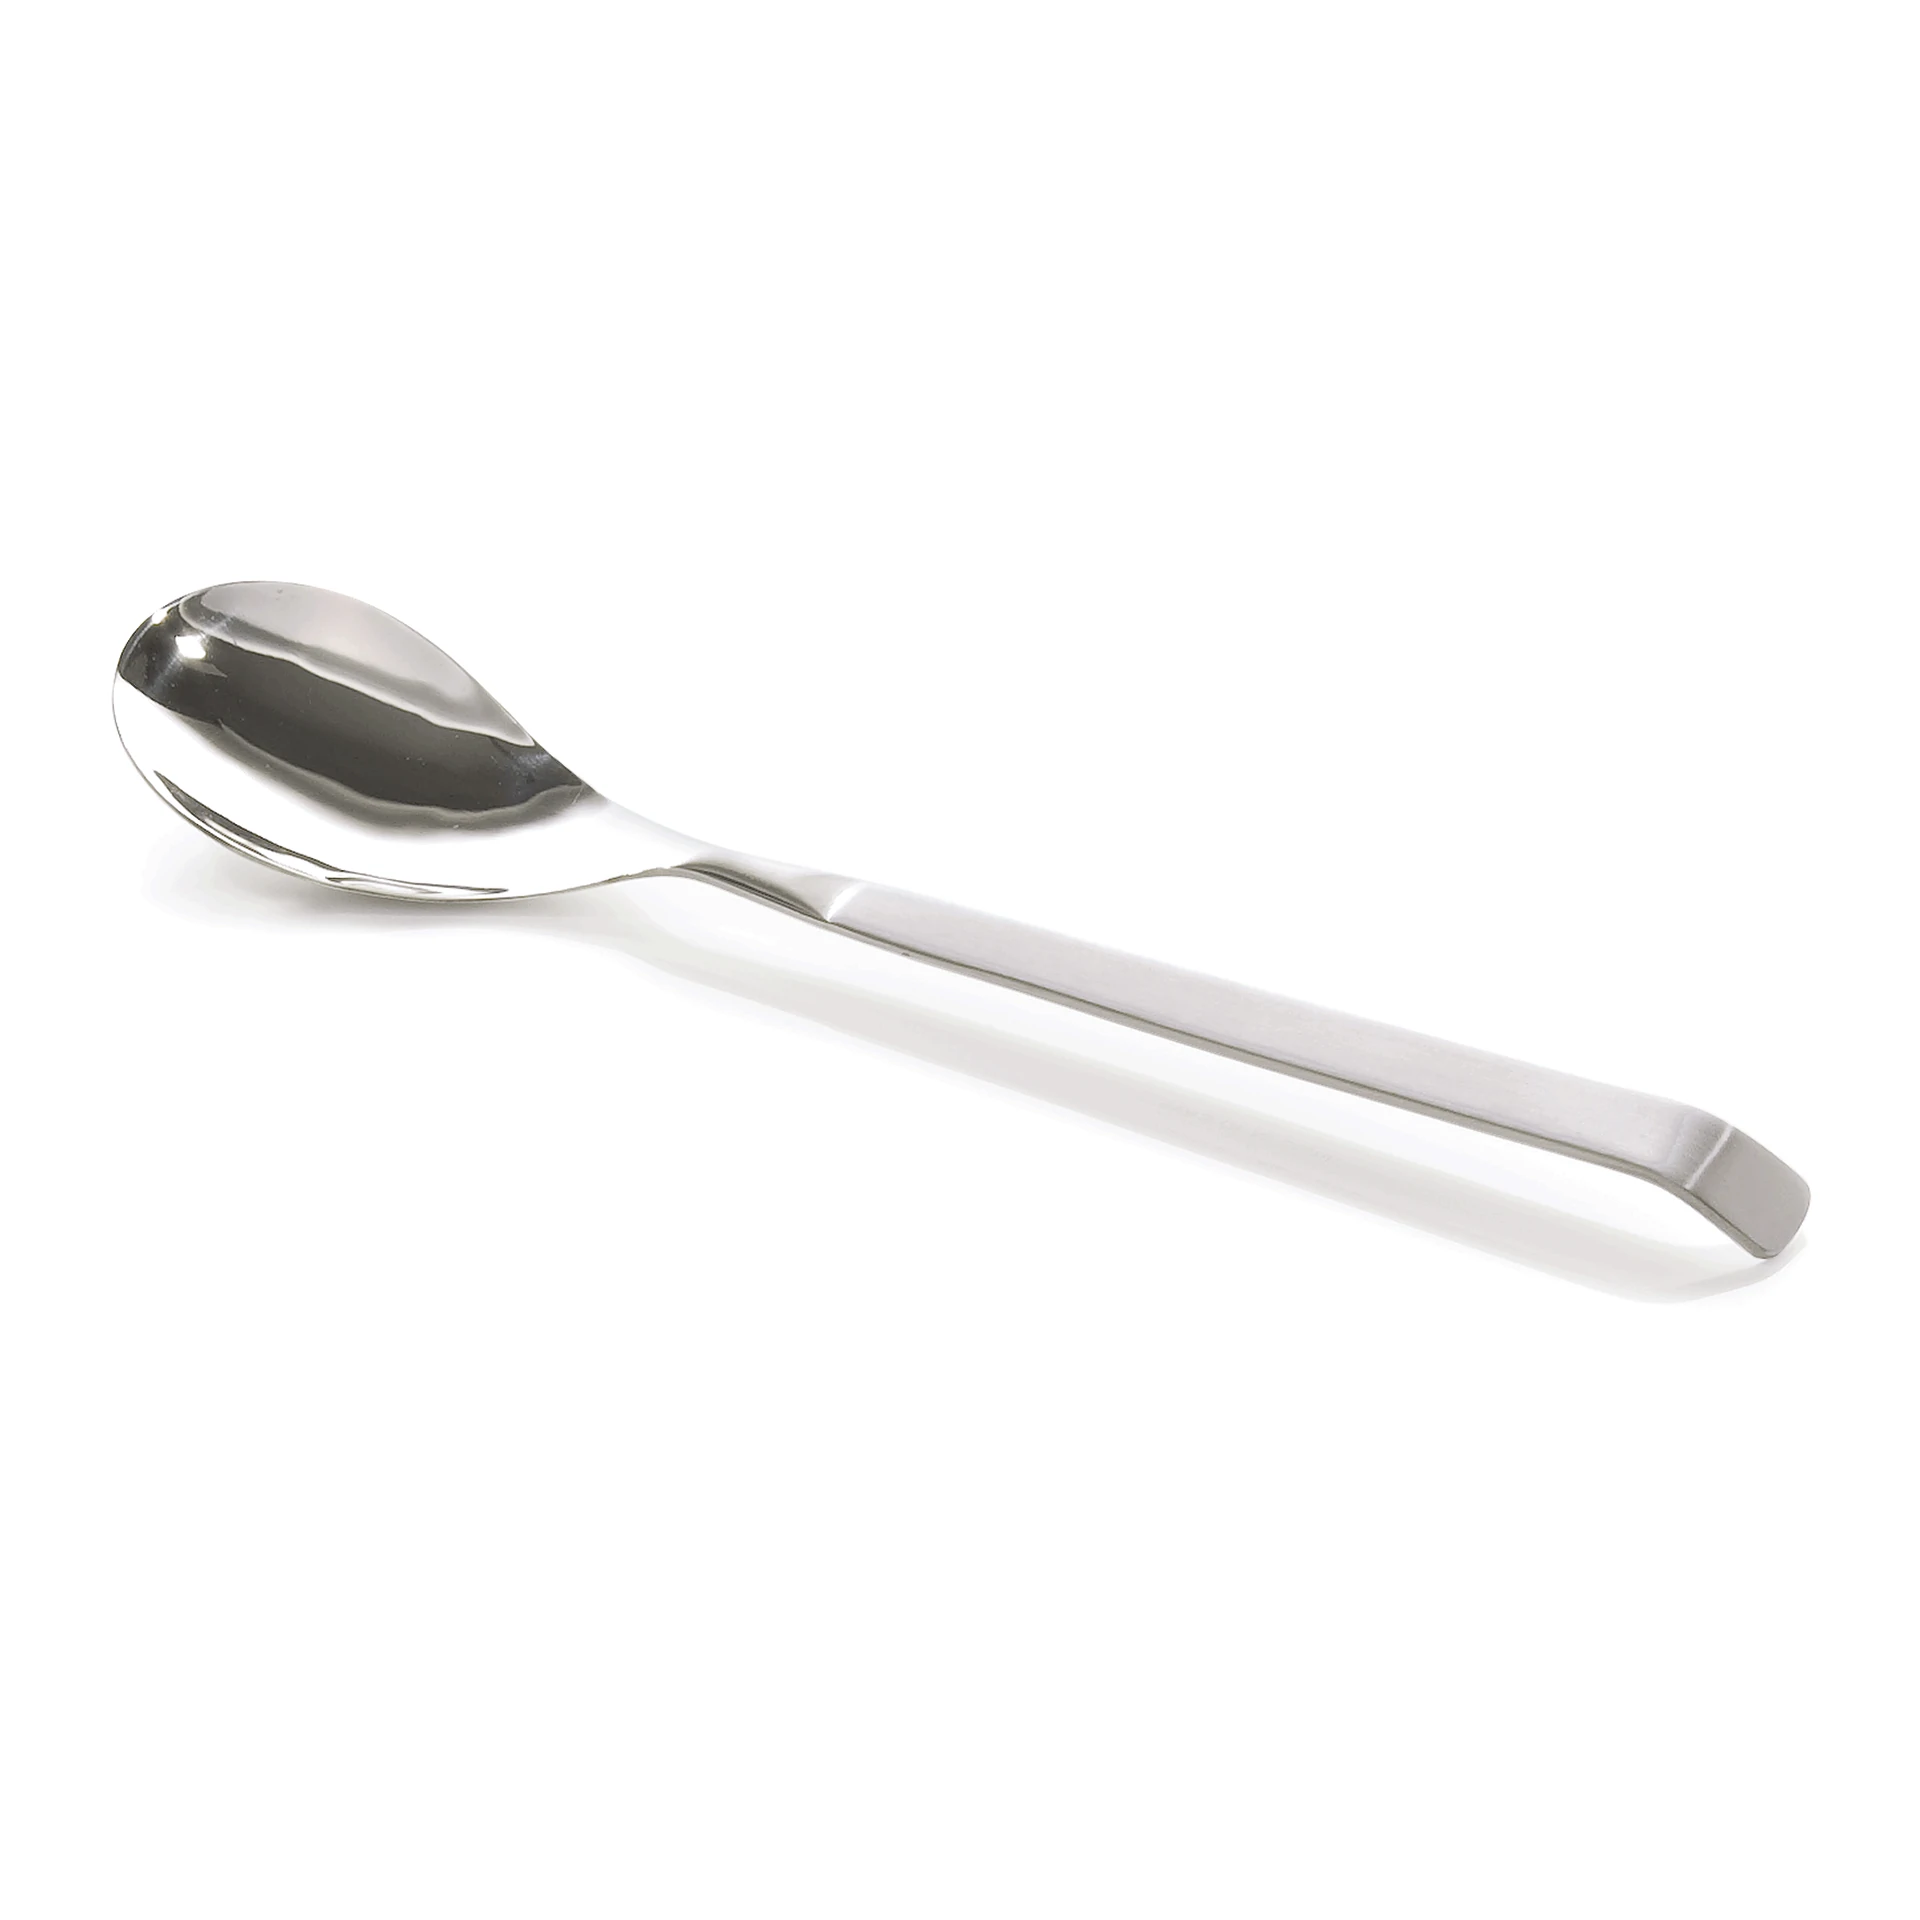 Salad spoon Kitchen Tool 2160